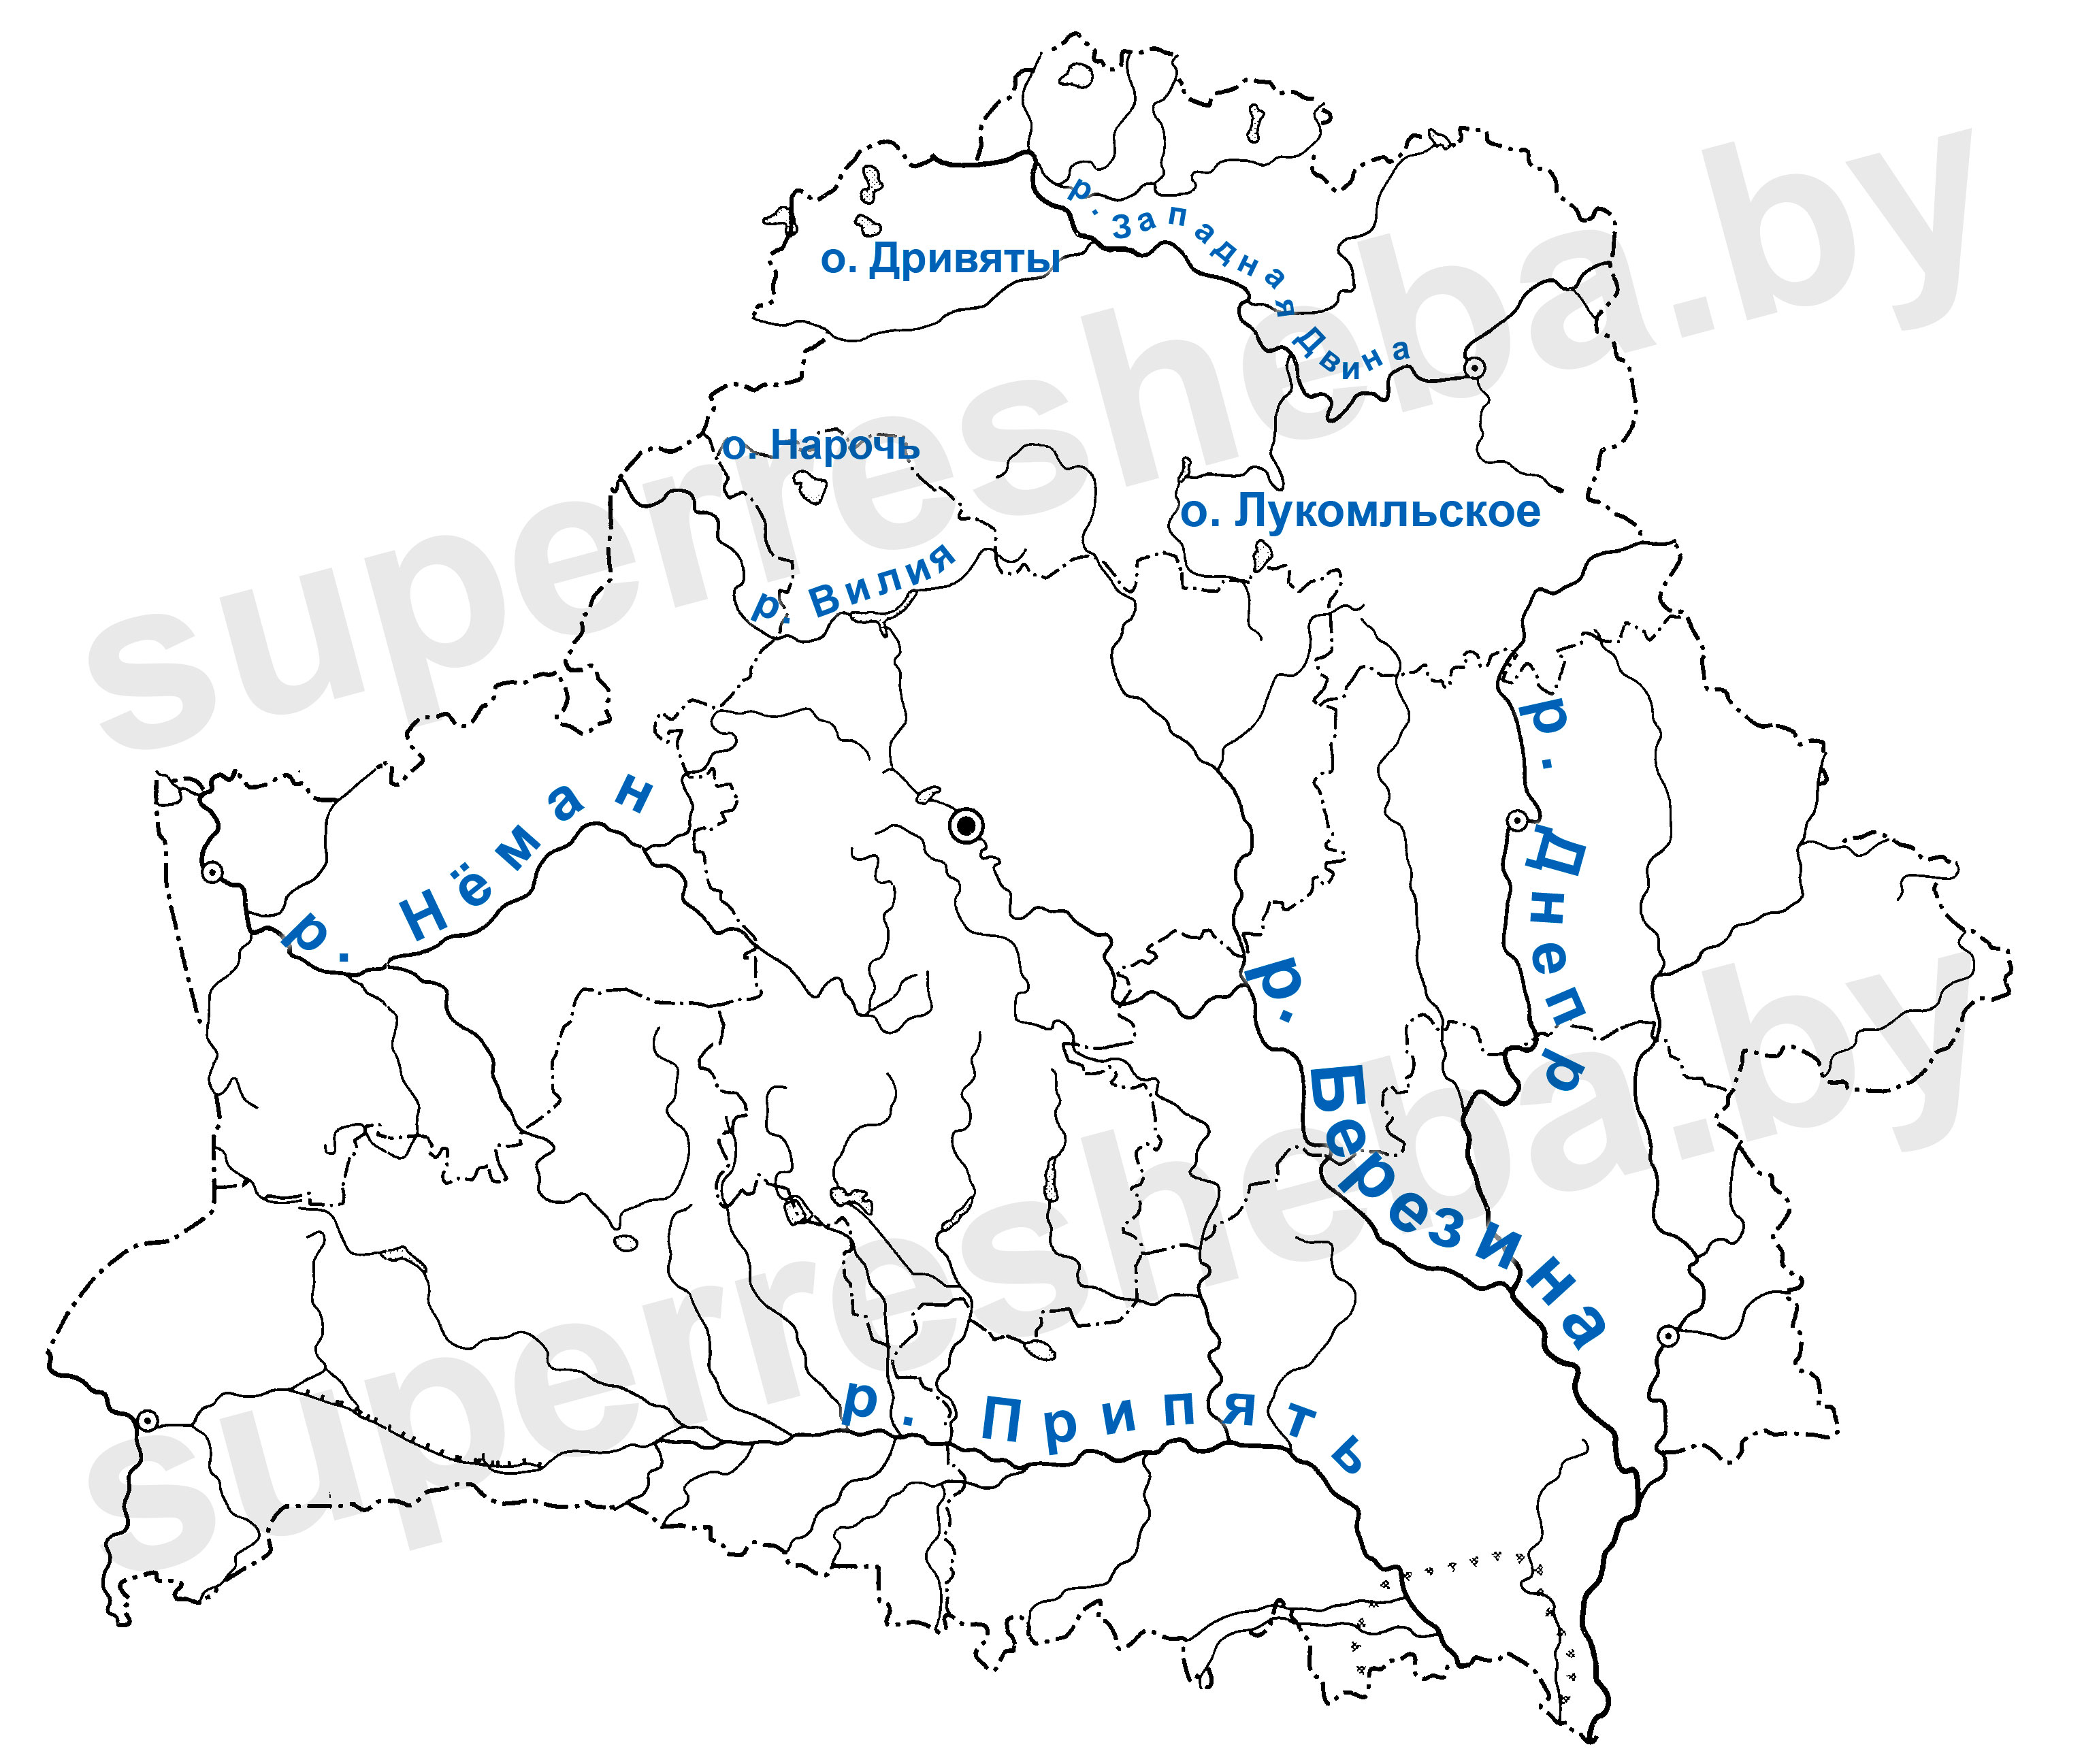 Контурная карта беларуси реки и озера